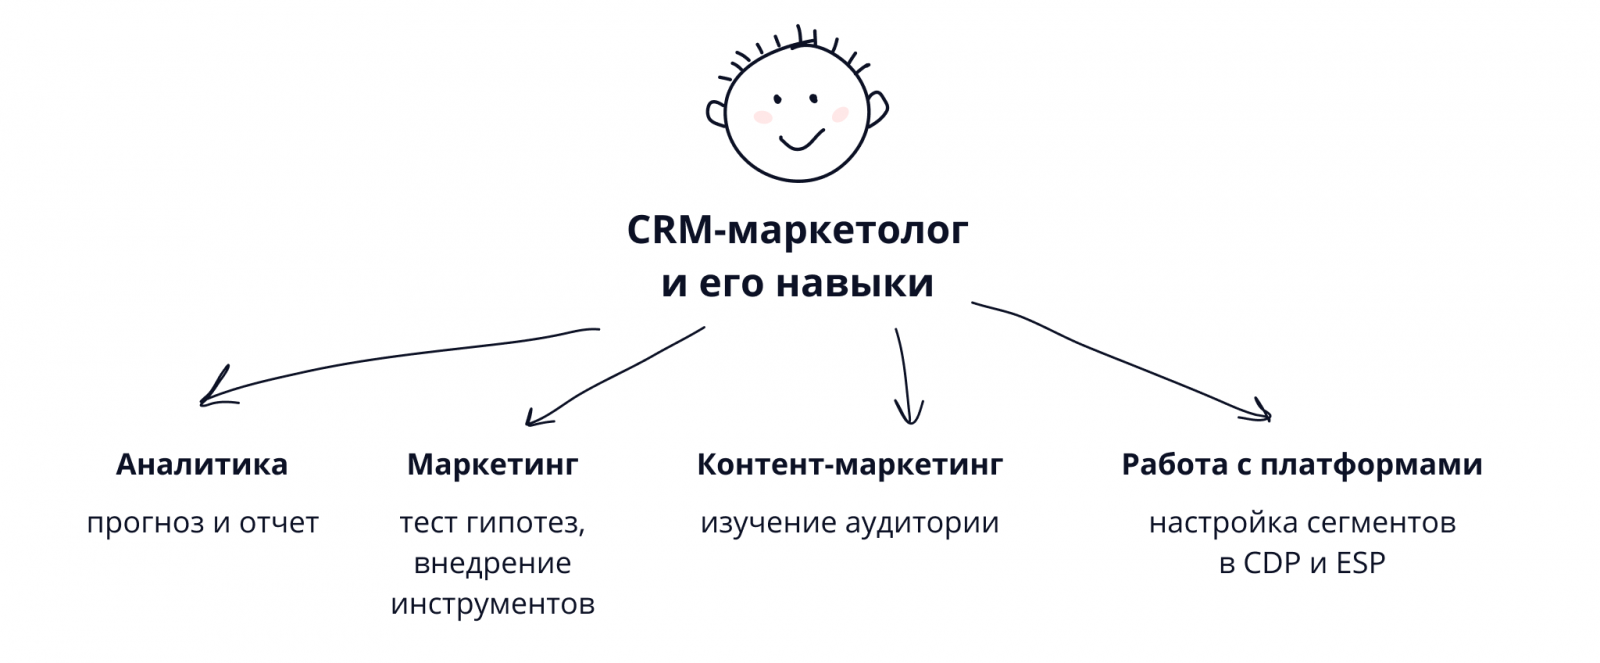  Навыки CRM-маркетолога